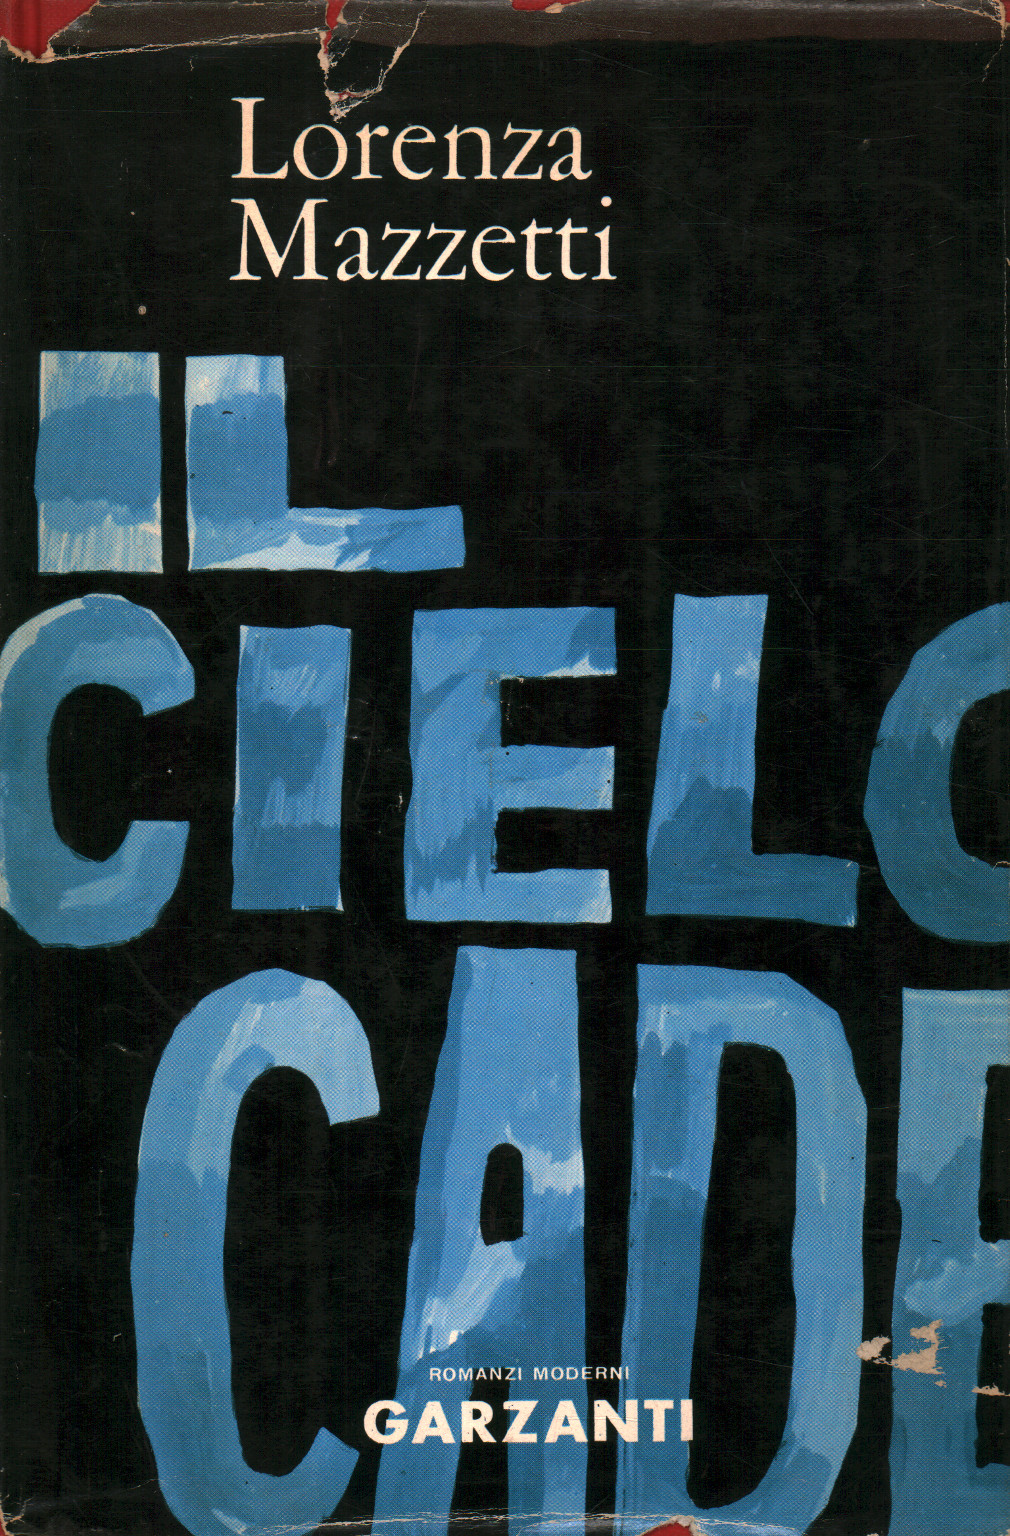 Book cover of "Il cielo cade"